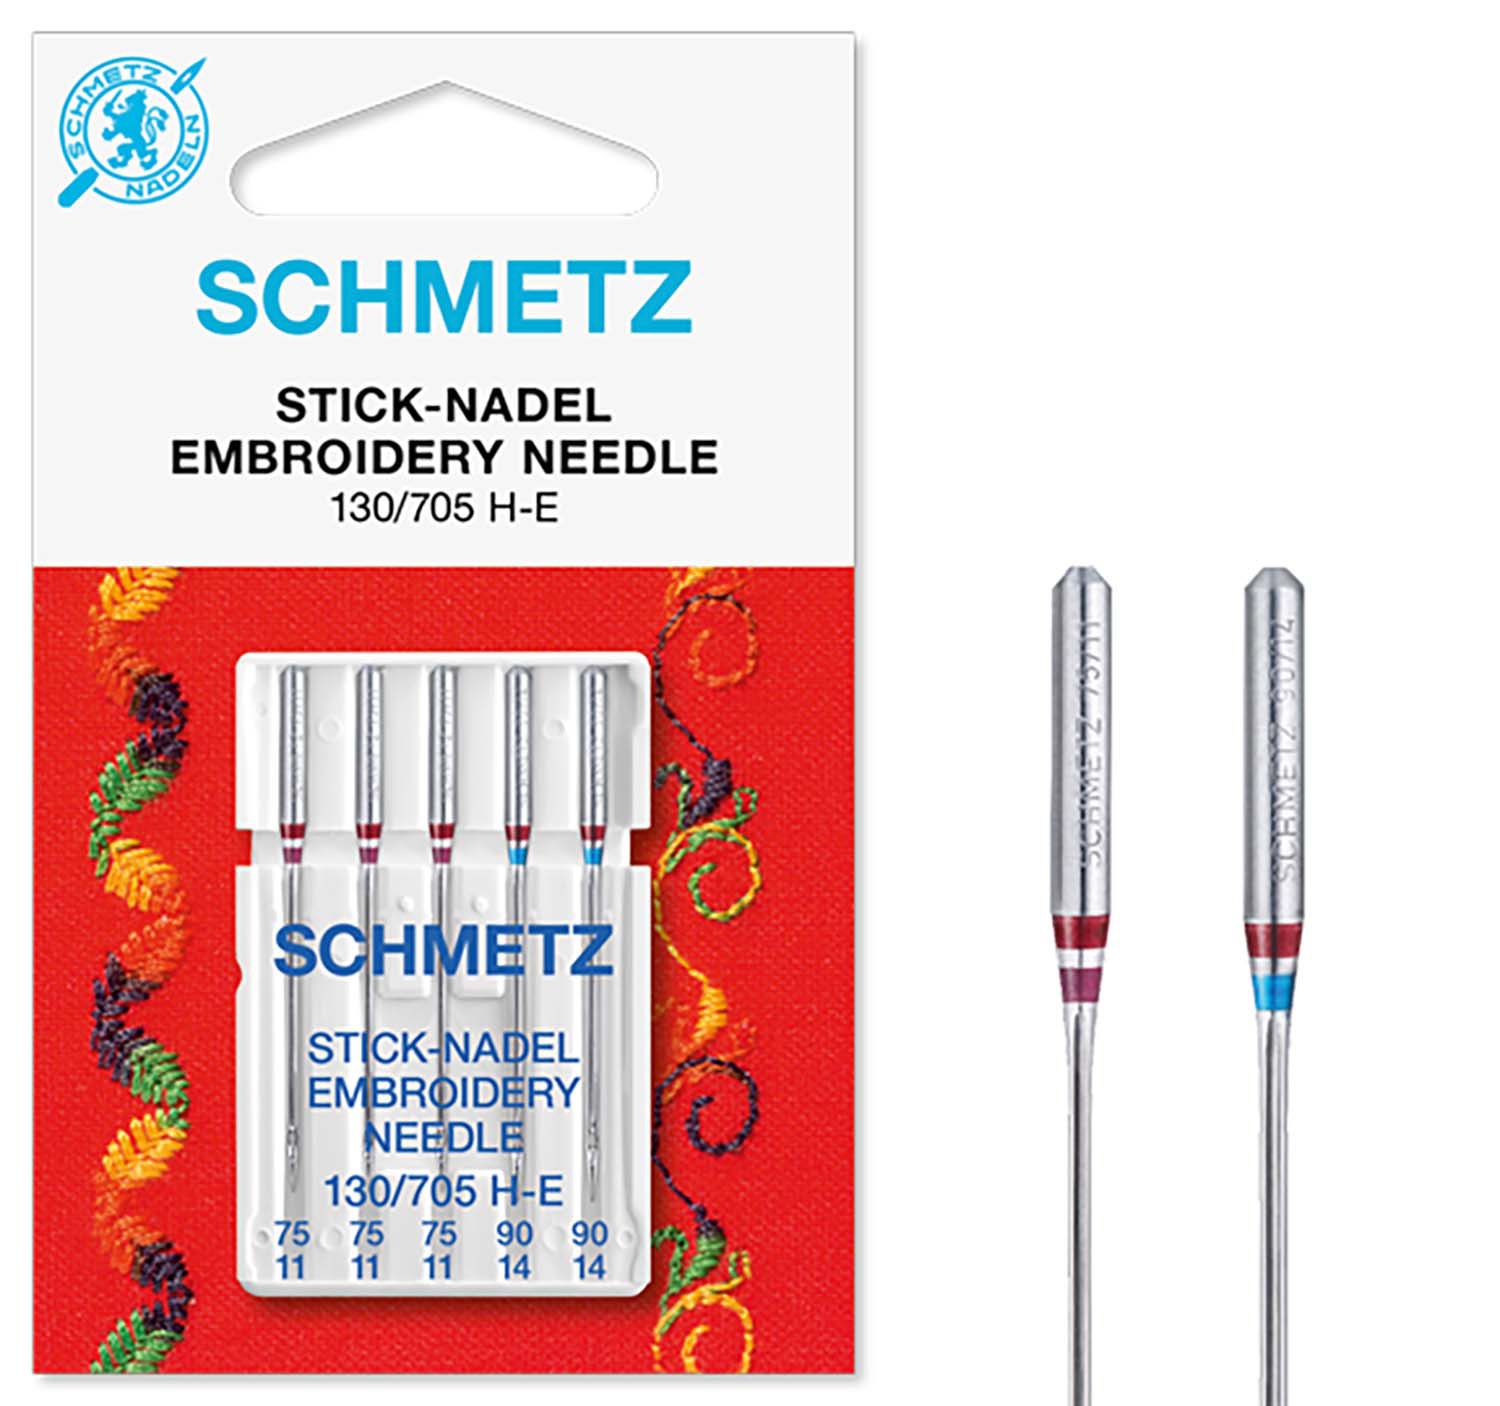 SCHMETZ Nähmaschinennadeln 5 Stick-Nadeln 130/705 H-E 3x 75/11 2x90/14